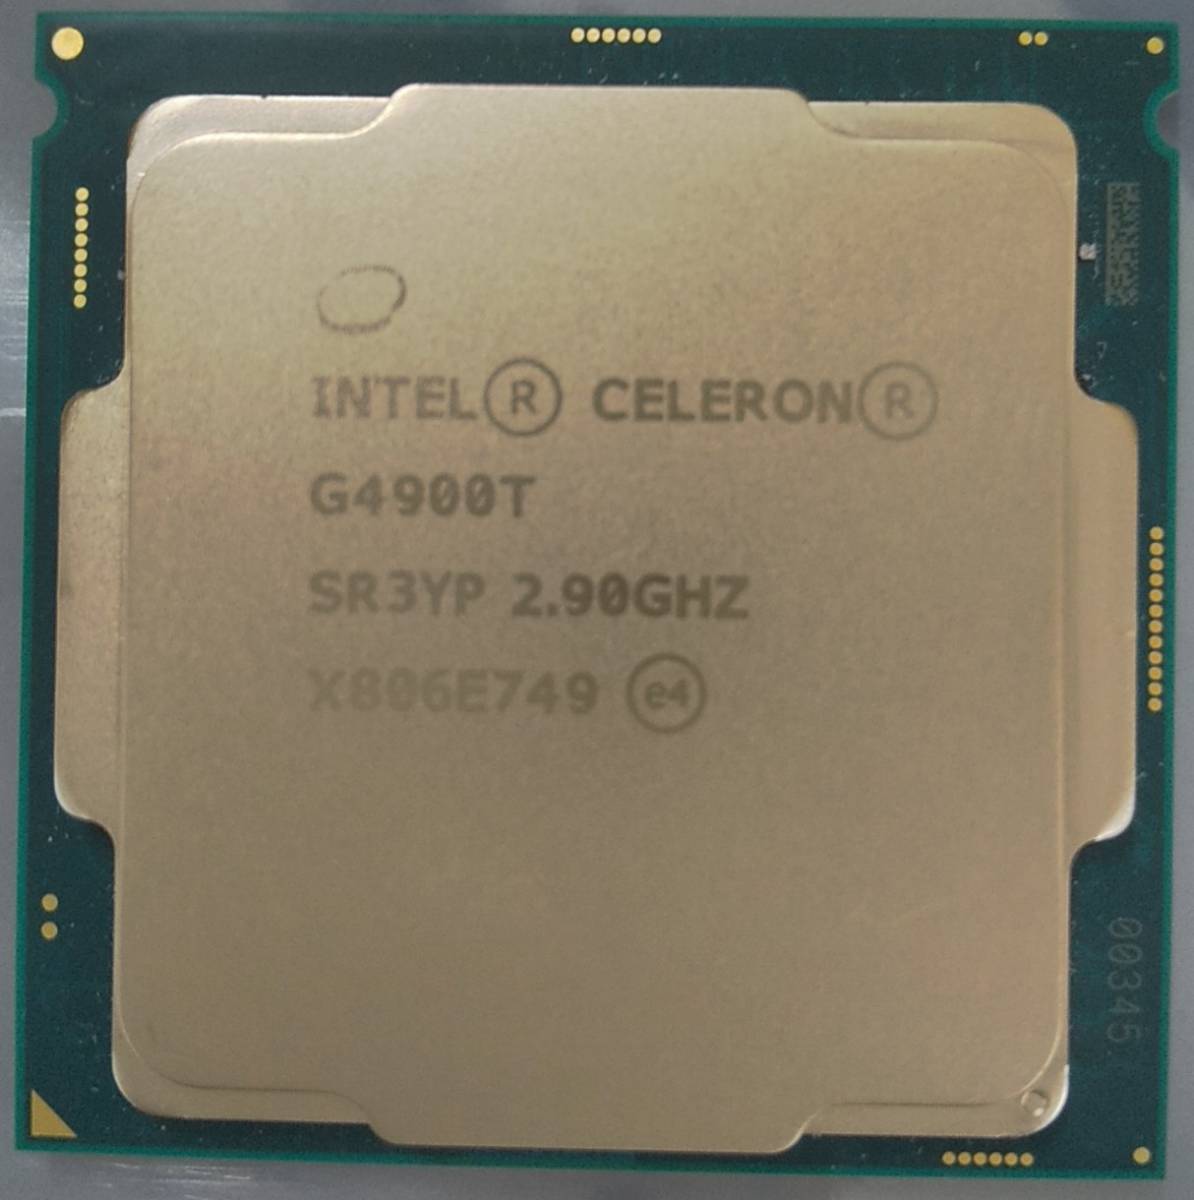 驚きの安さ SR3YP 2.90Ghz G4900T Celeron Intel 20個セット CPU